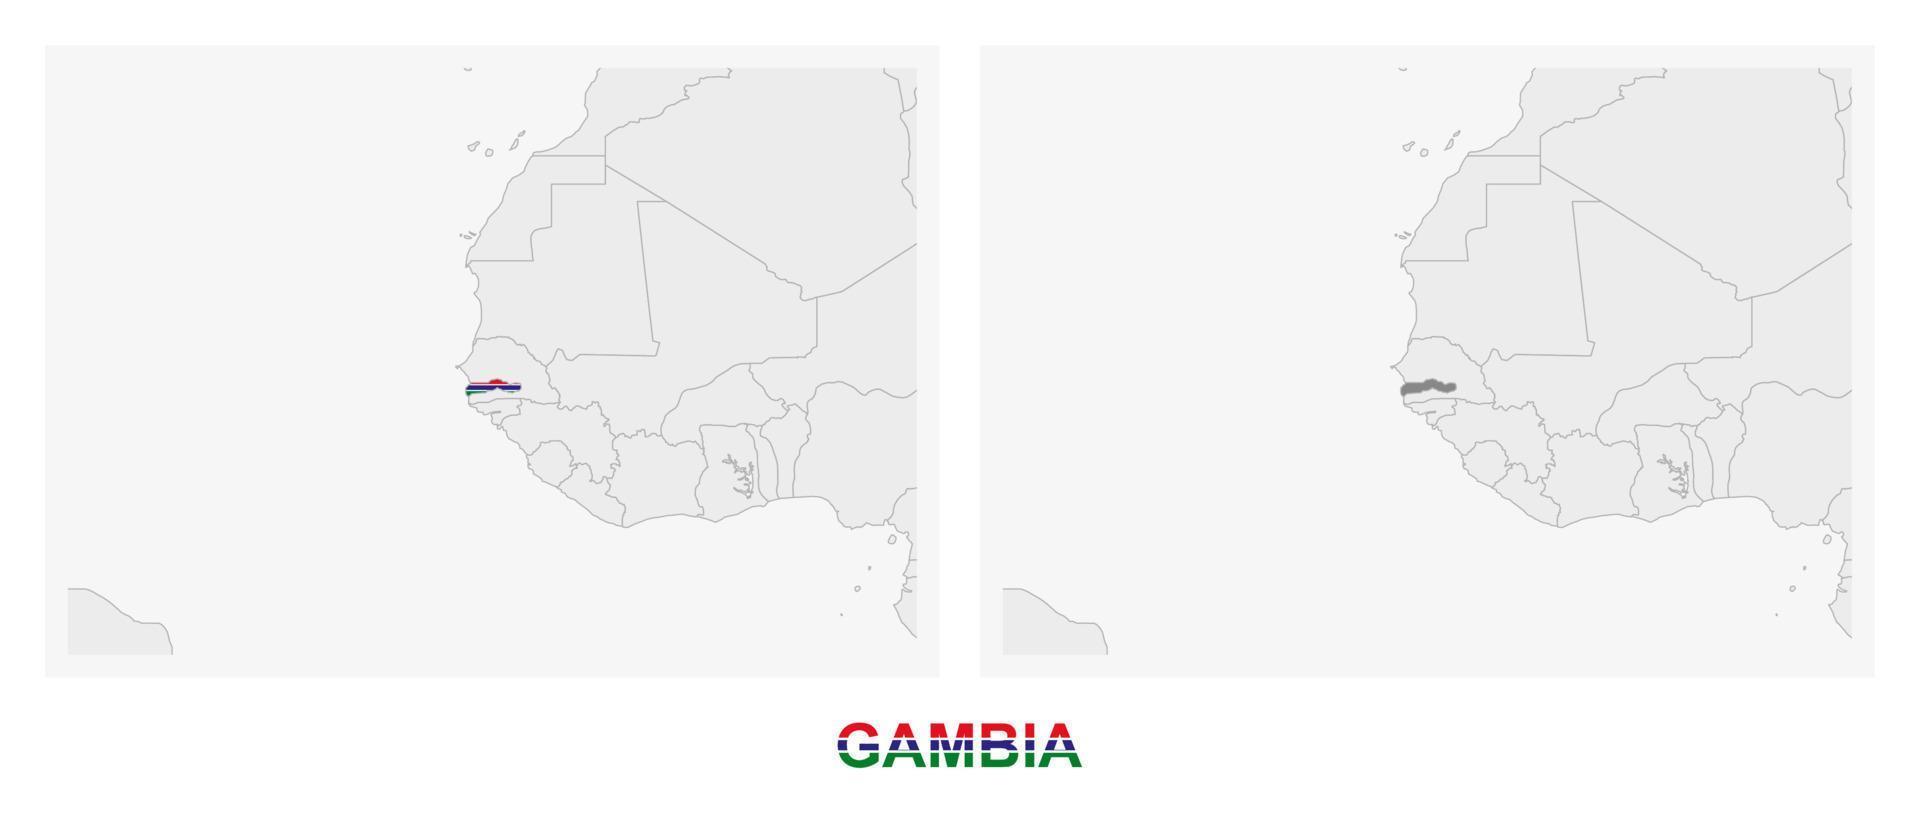 zwei versionen der karte von gambia, mit der flagge von gambia und dunkelgrau hervorgehoben. vektor